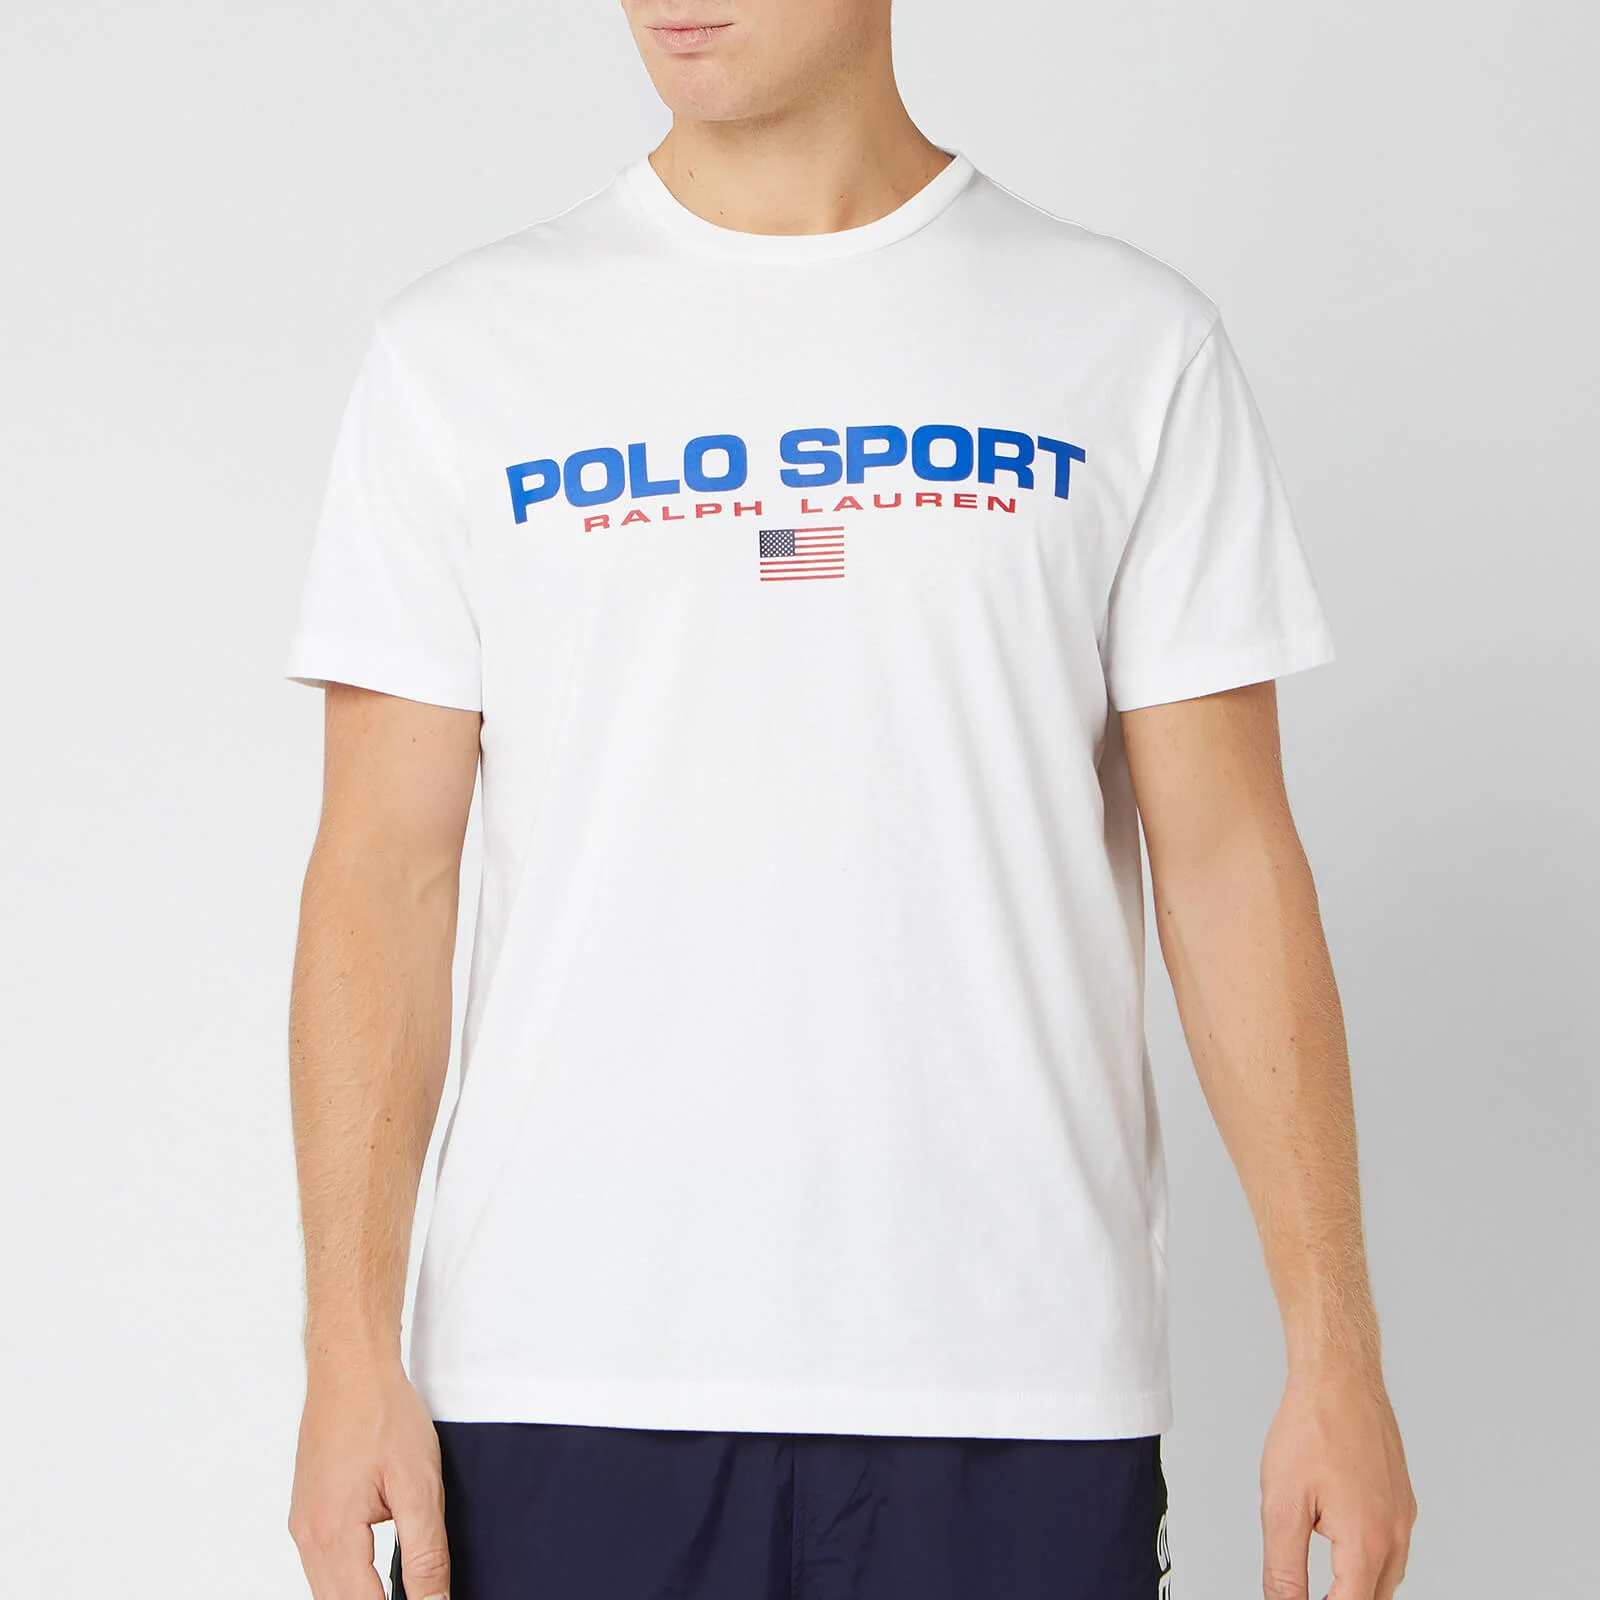 Polo Sport Ralph Lauren Men's T-Shirt - White Image 1